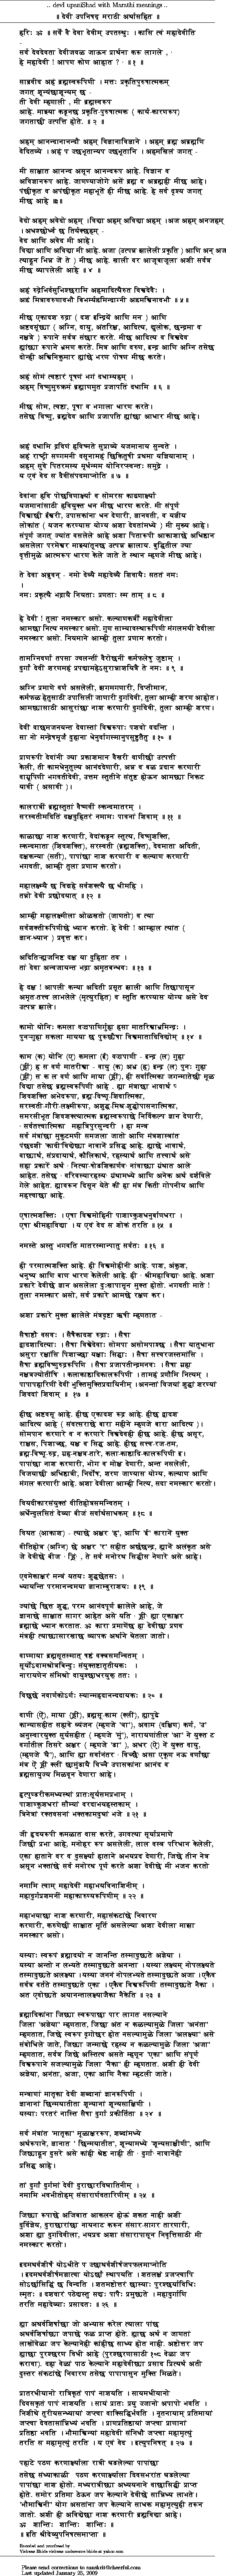 Marathi Documents List